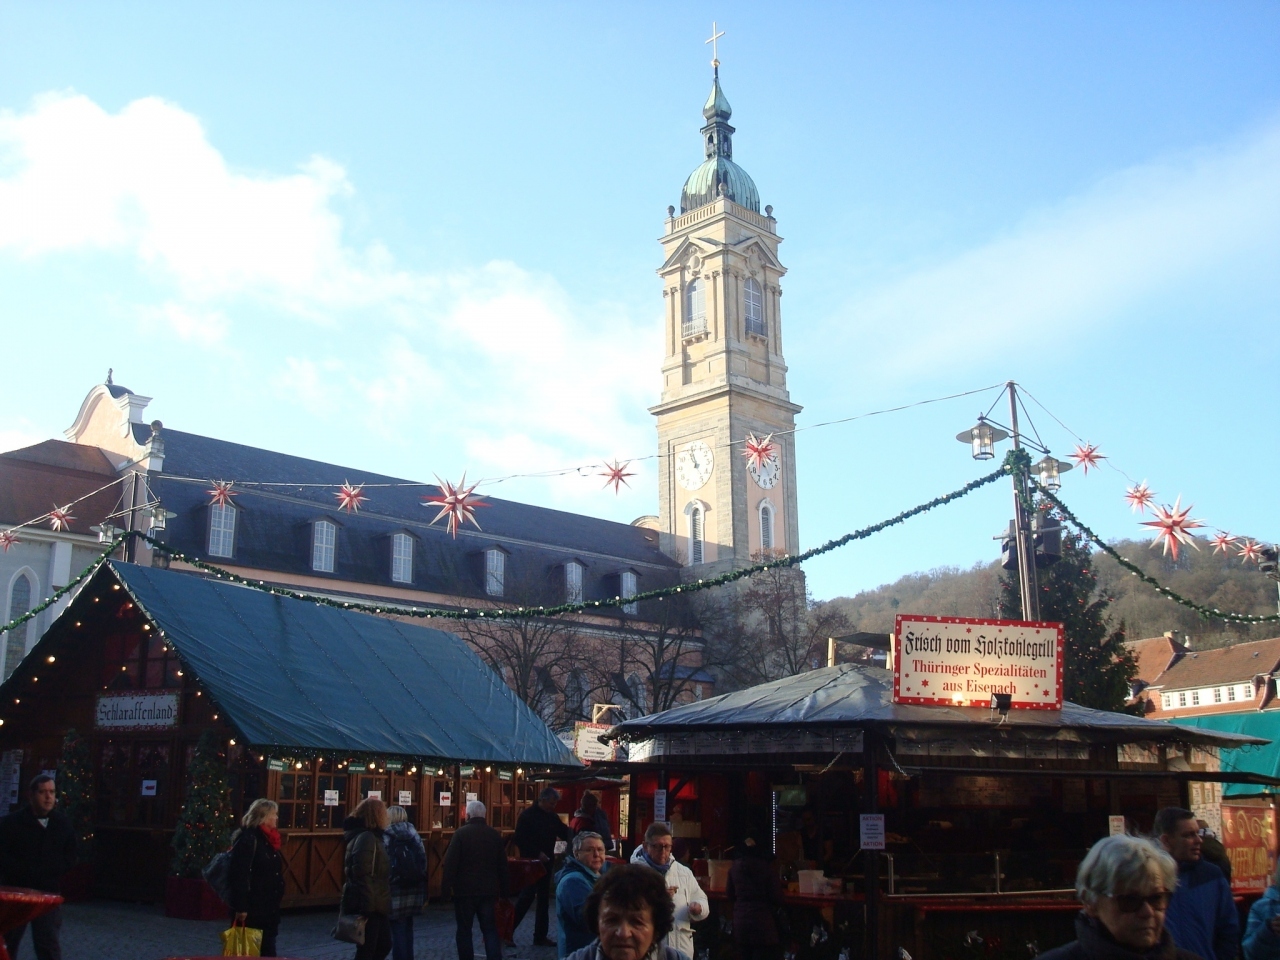 マルクト広場のクリスマスマーケットへ。
向こうに見えるのは高さ62メートルのゲオルク教会